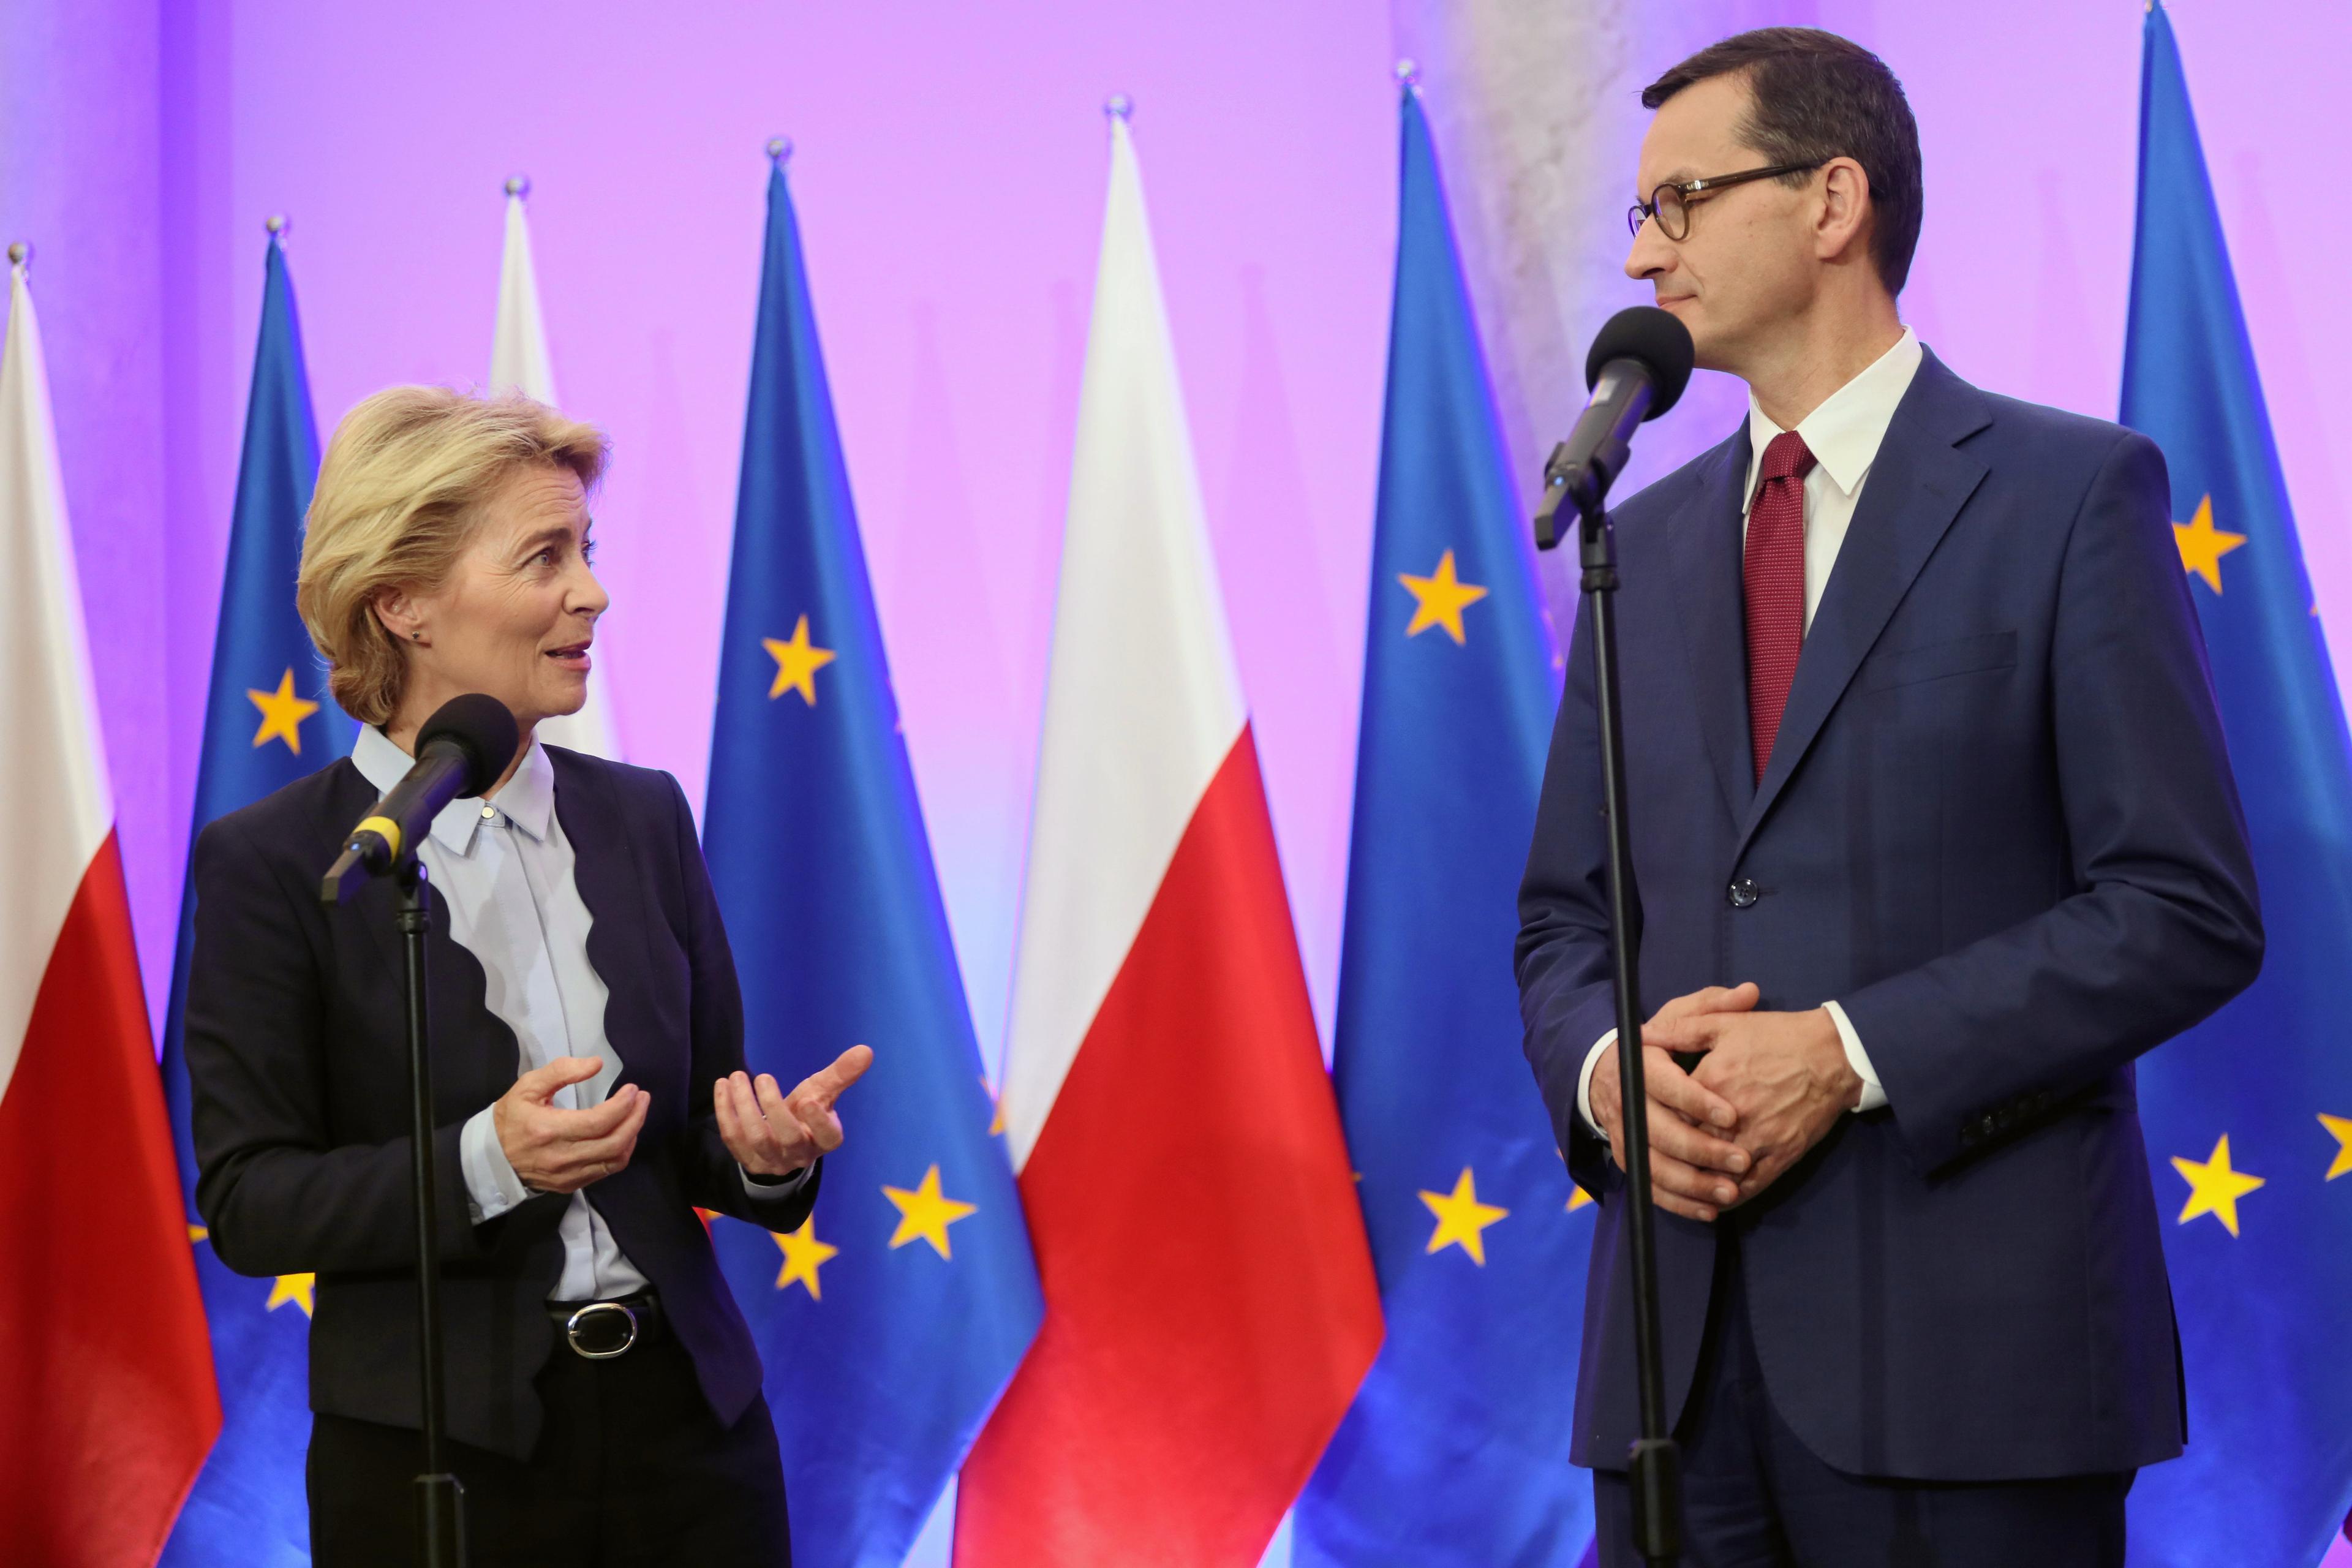 Na zdjęciu widzimy Ursulę von der Leyen i Mateusza Morawieckiego stojących i patrzących się na siebie. Za nimi jest rząd polskich i unijnych flag i różowa ściana.